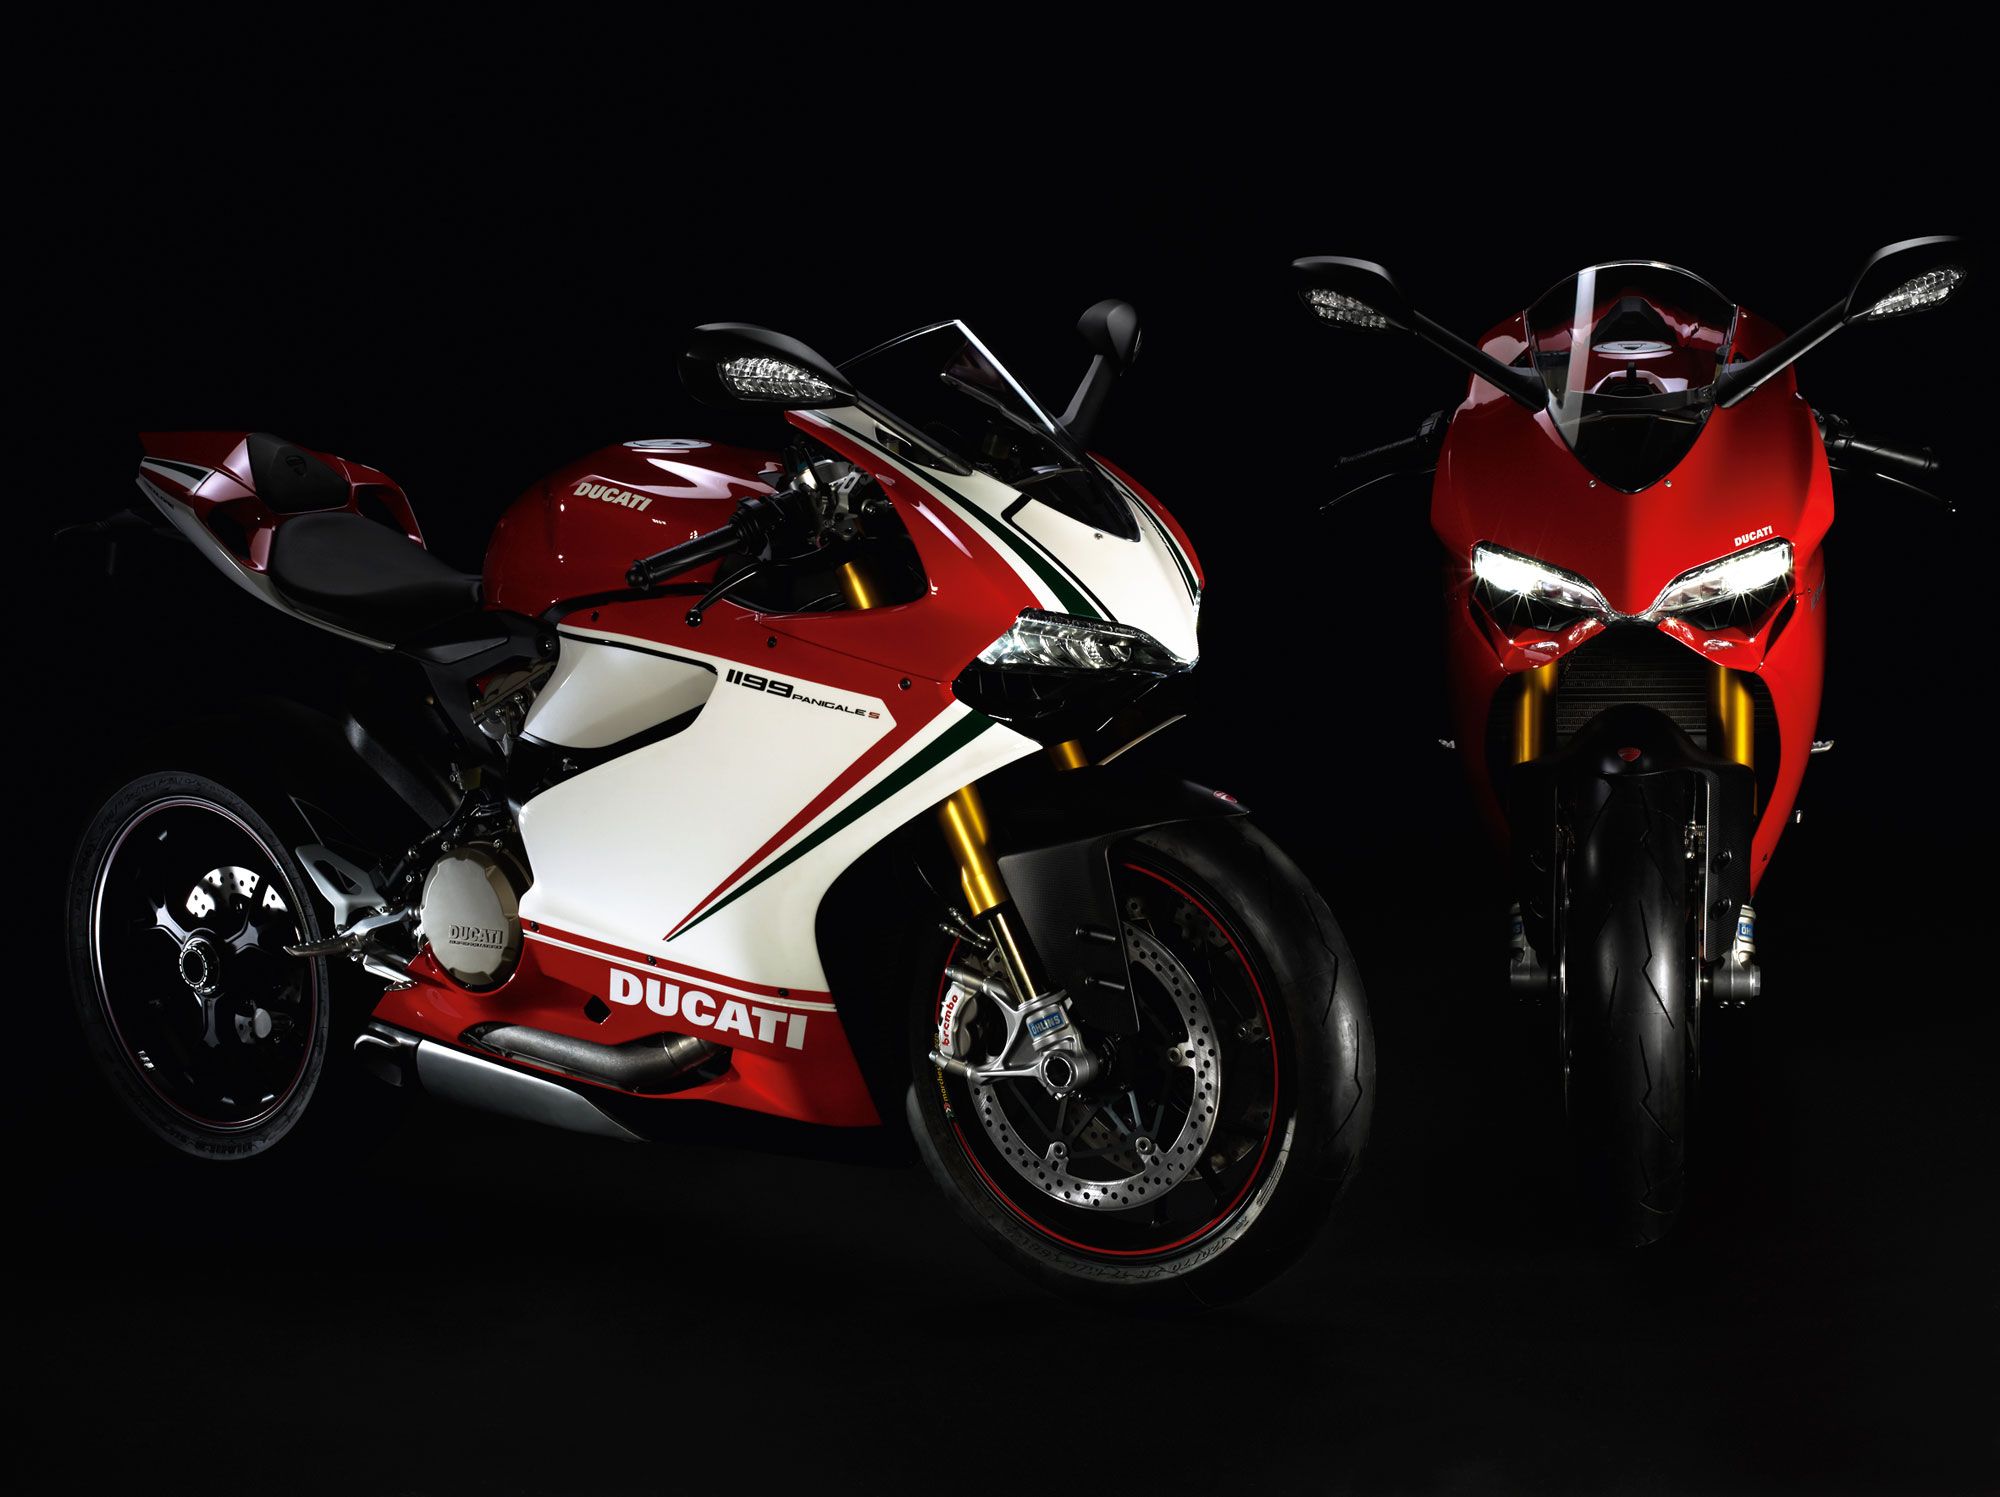 2013 Ducati Superbike 1199 Panigale-S Tricolore panigale w ...